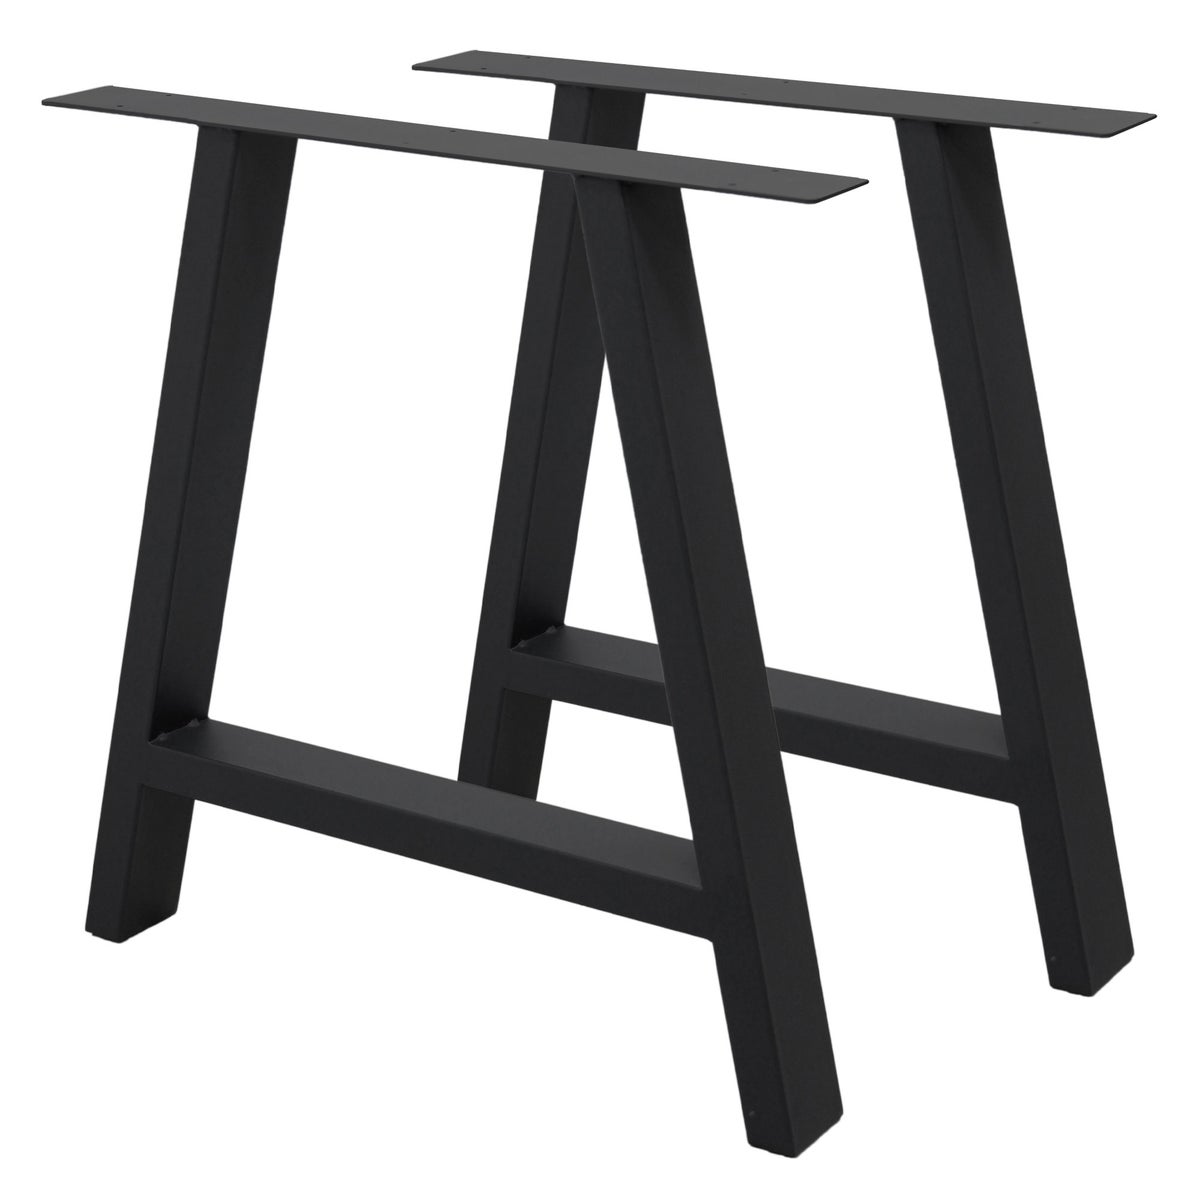 ECD Germany 2x Tischbeine A-Form A-Design, 70 x 72 cm, Schwarz, aus pulverbeschichtetem Stahl, Industriedesign, Metall Tischkufen Tischuntergestell Tischgestell Möbelfüße, für Esstisch Schreibtisch